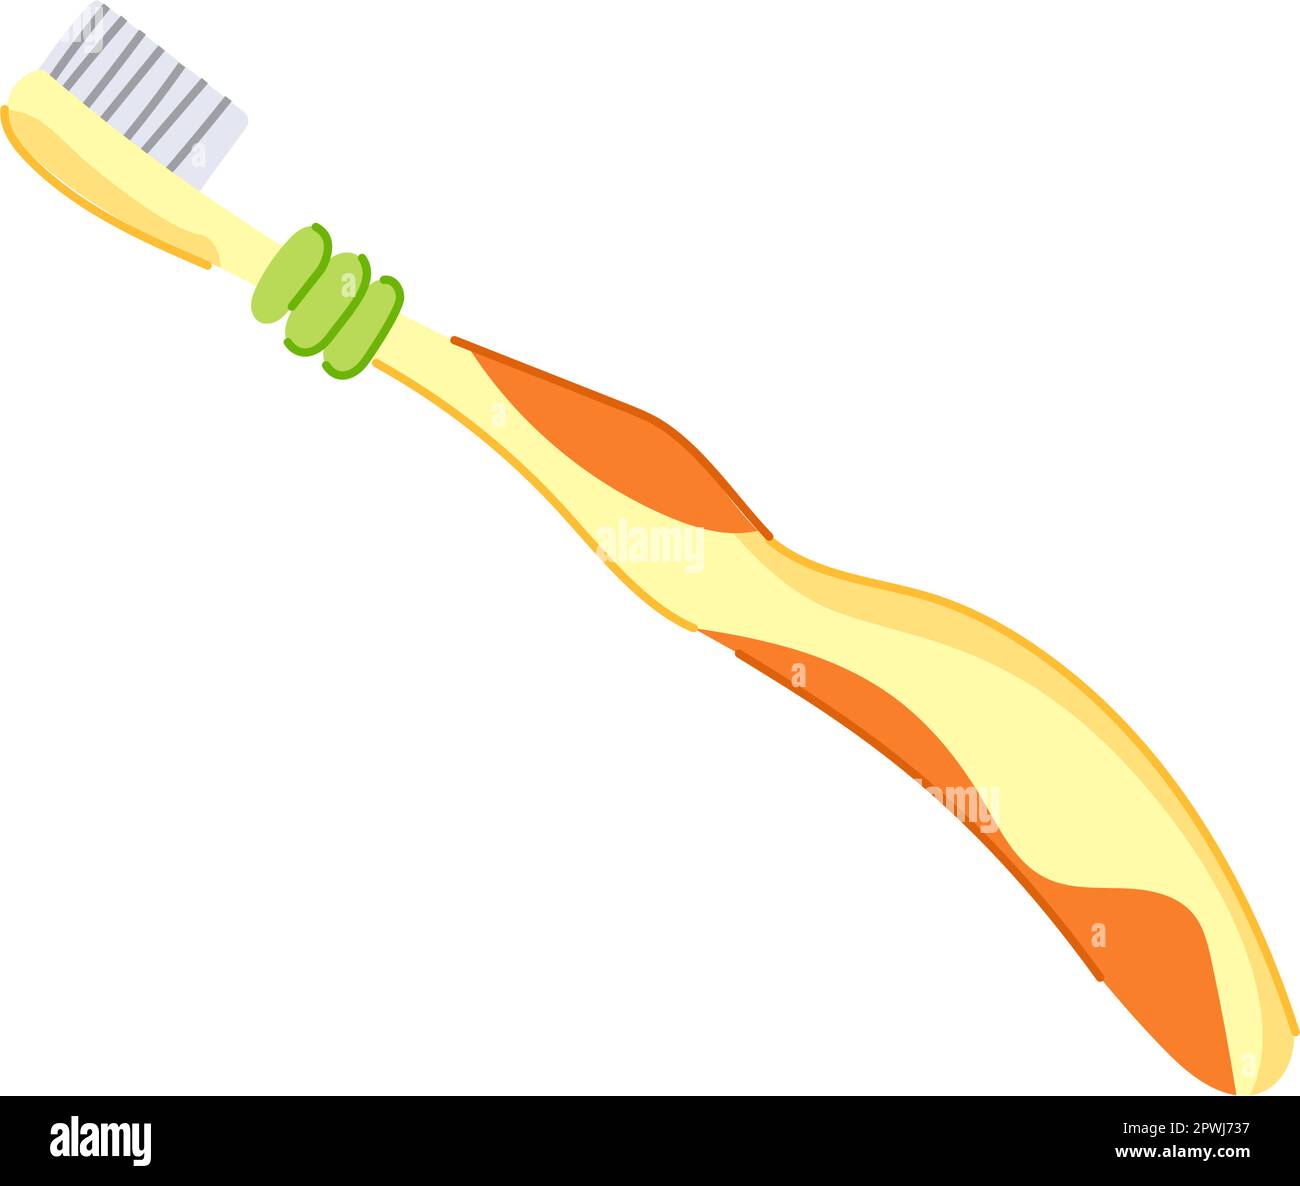 tooth toothbrush dental cartoon. bathroom toothpaste, bamboo teeth tooth toothbrush dental sign. isolated symbol vector illustration Stock Vector